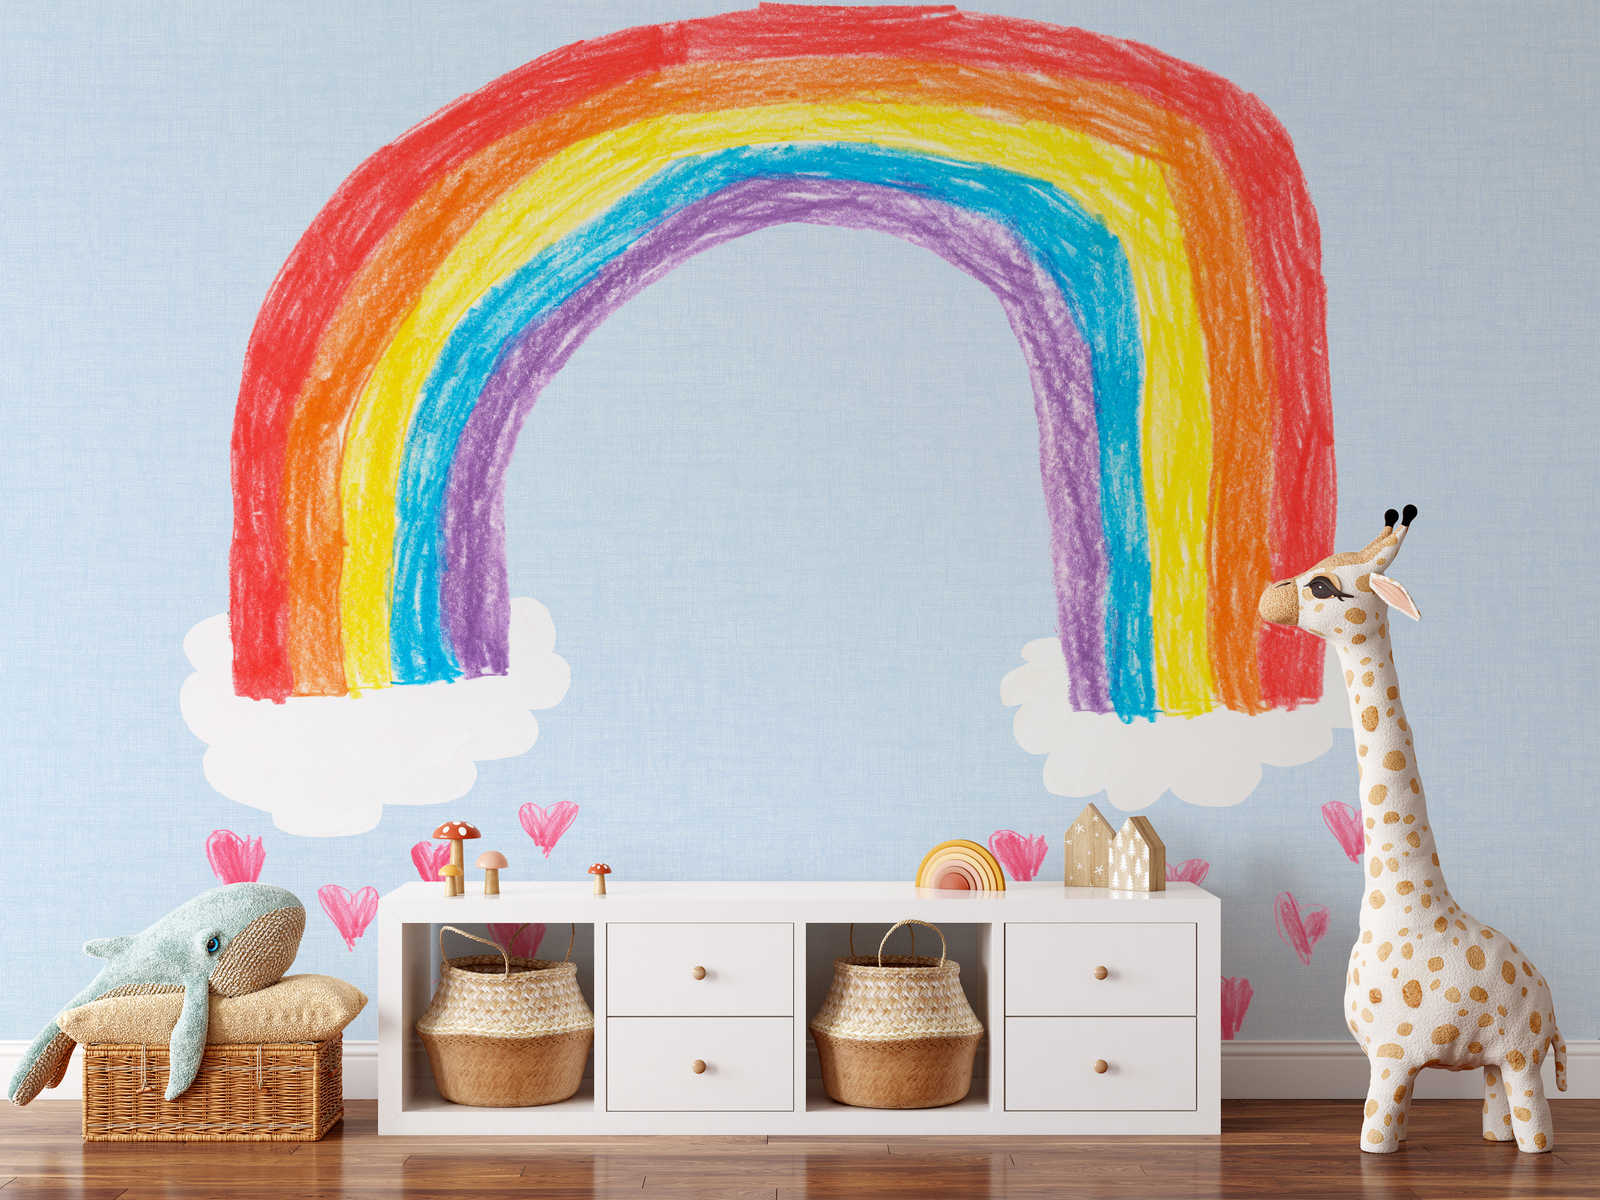             Carta da parati arcobaleno autodipinta per la stanza dei bambini
        